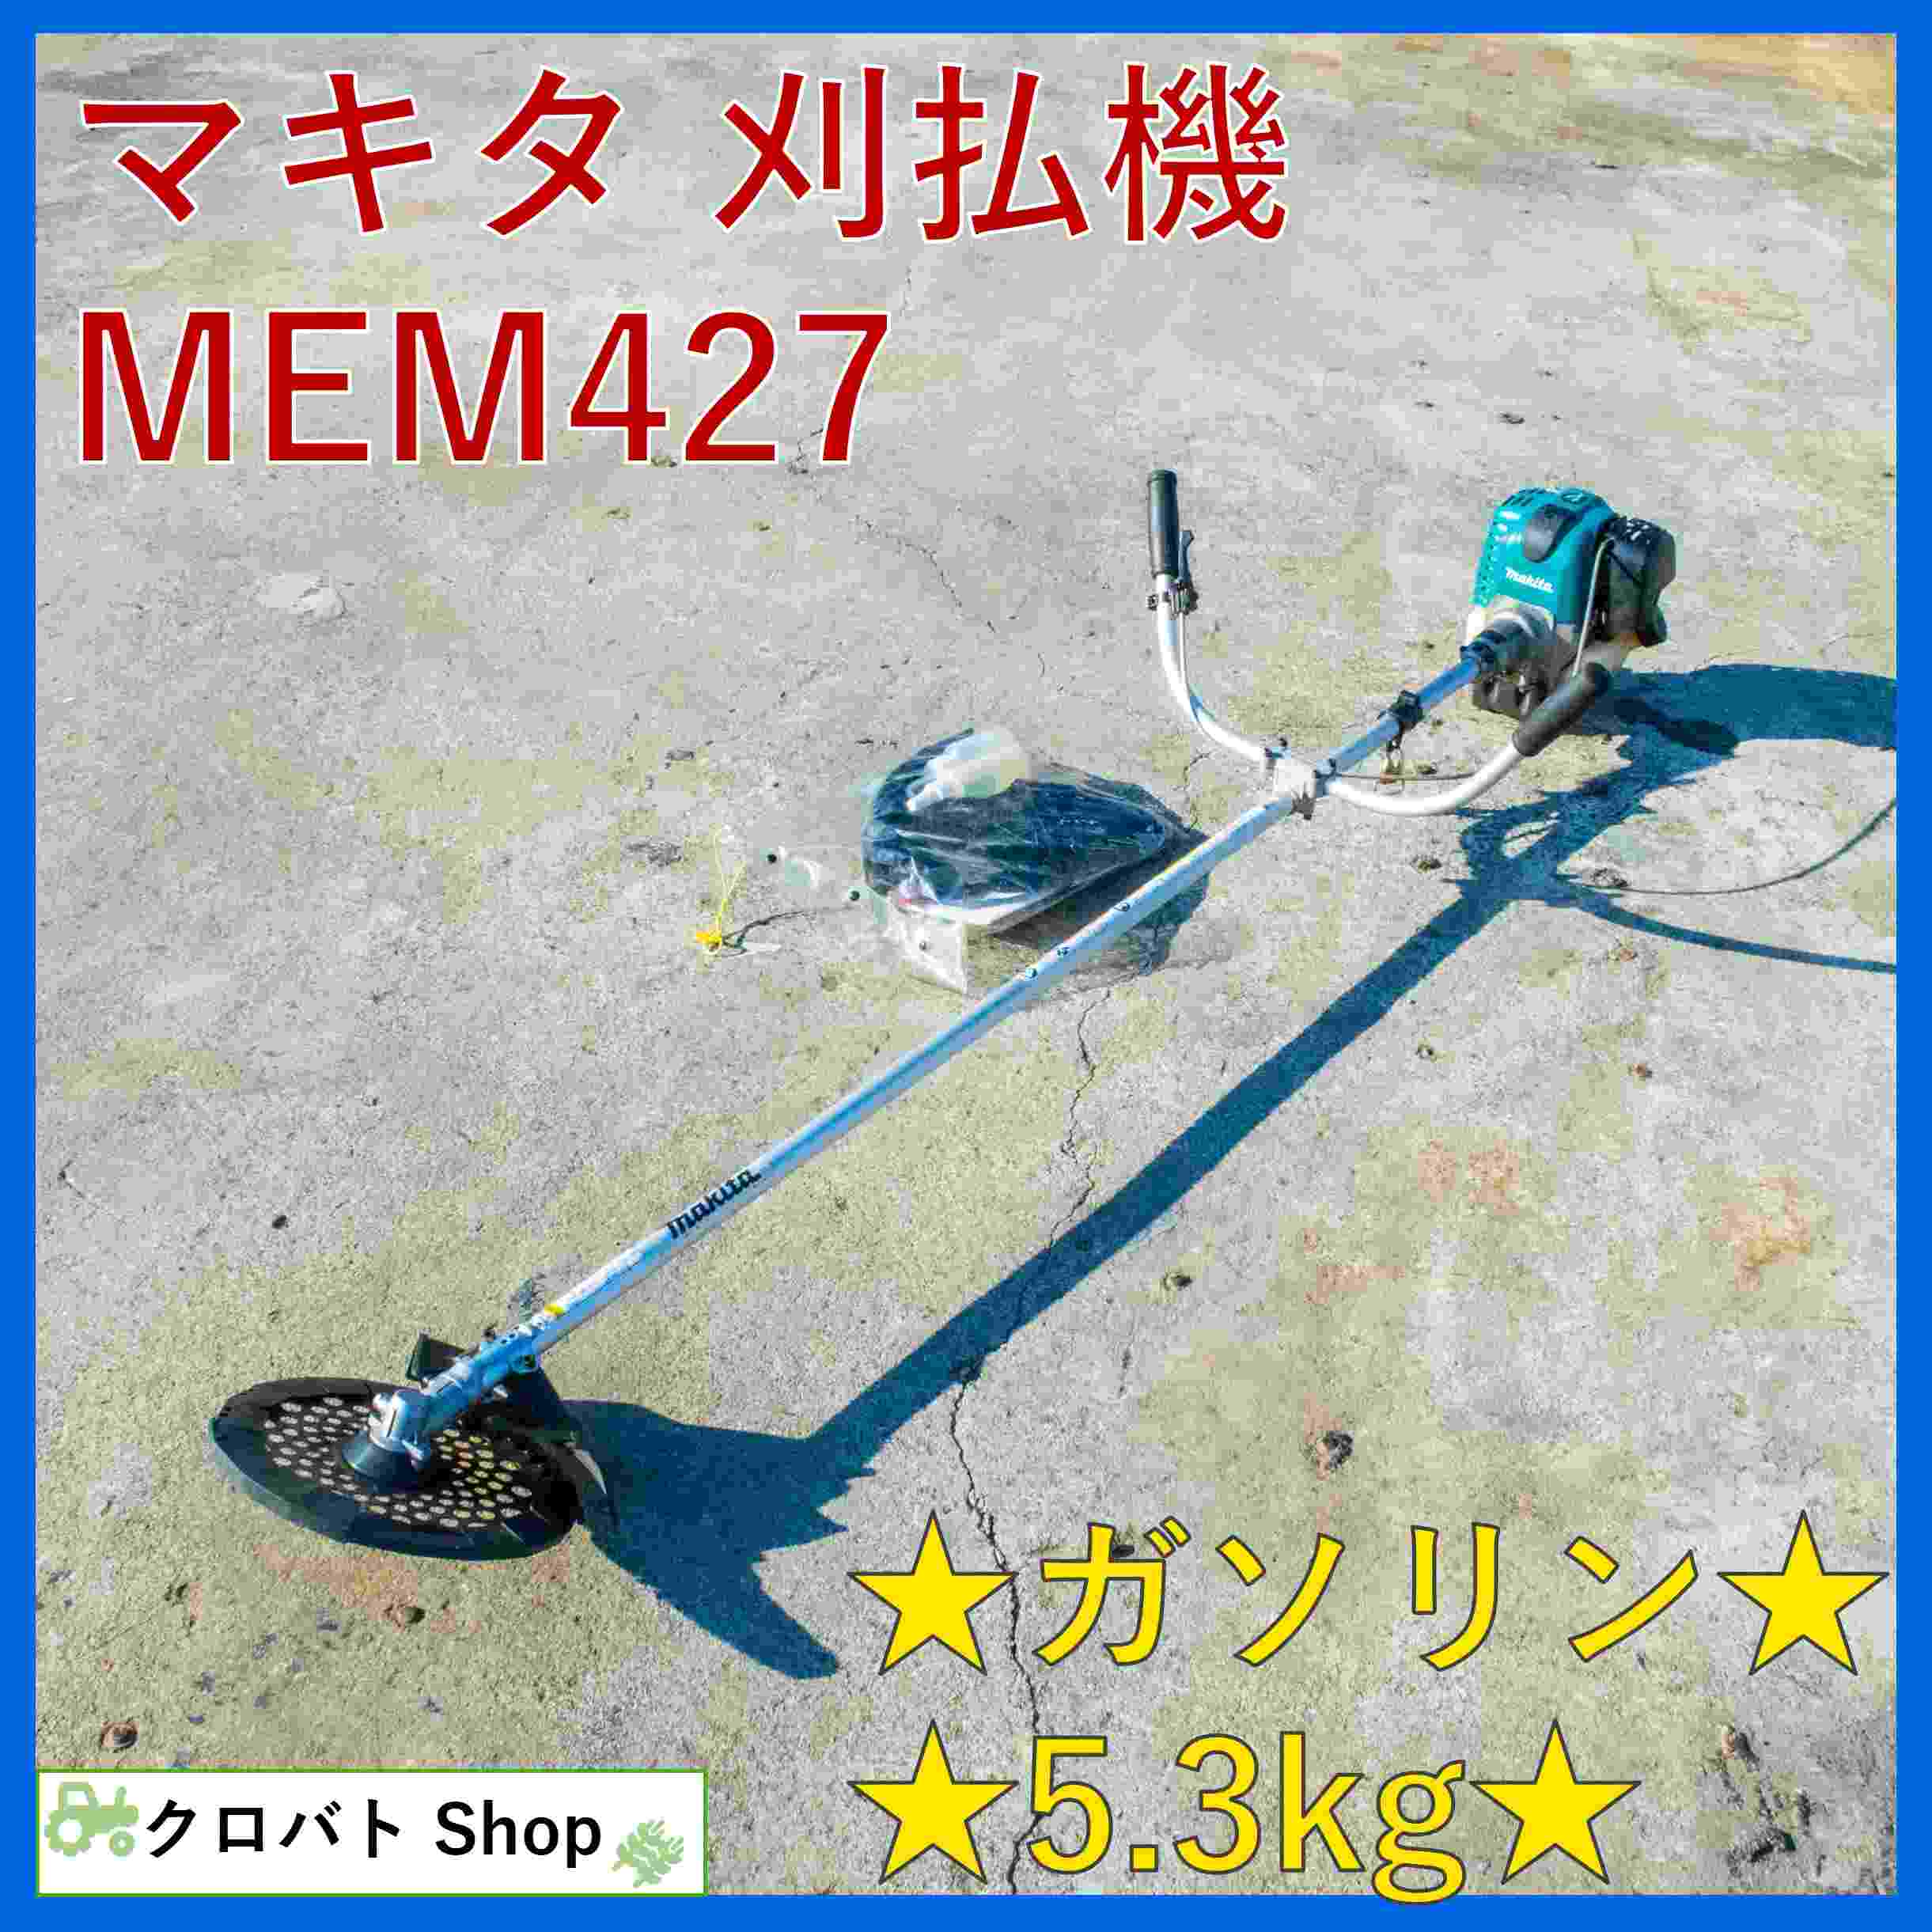 マキタ 中古草刈機 MEM427